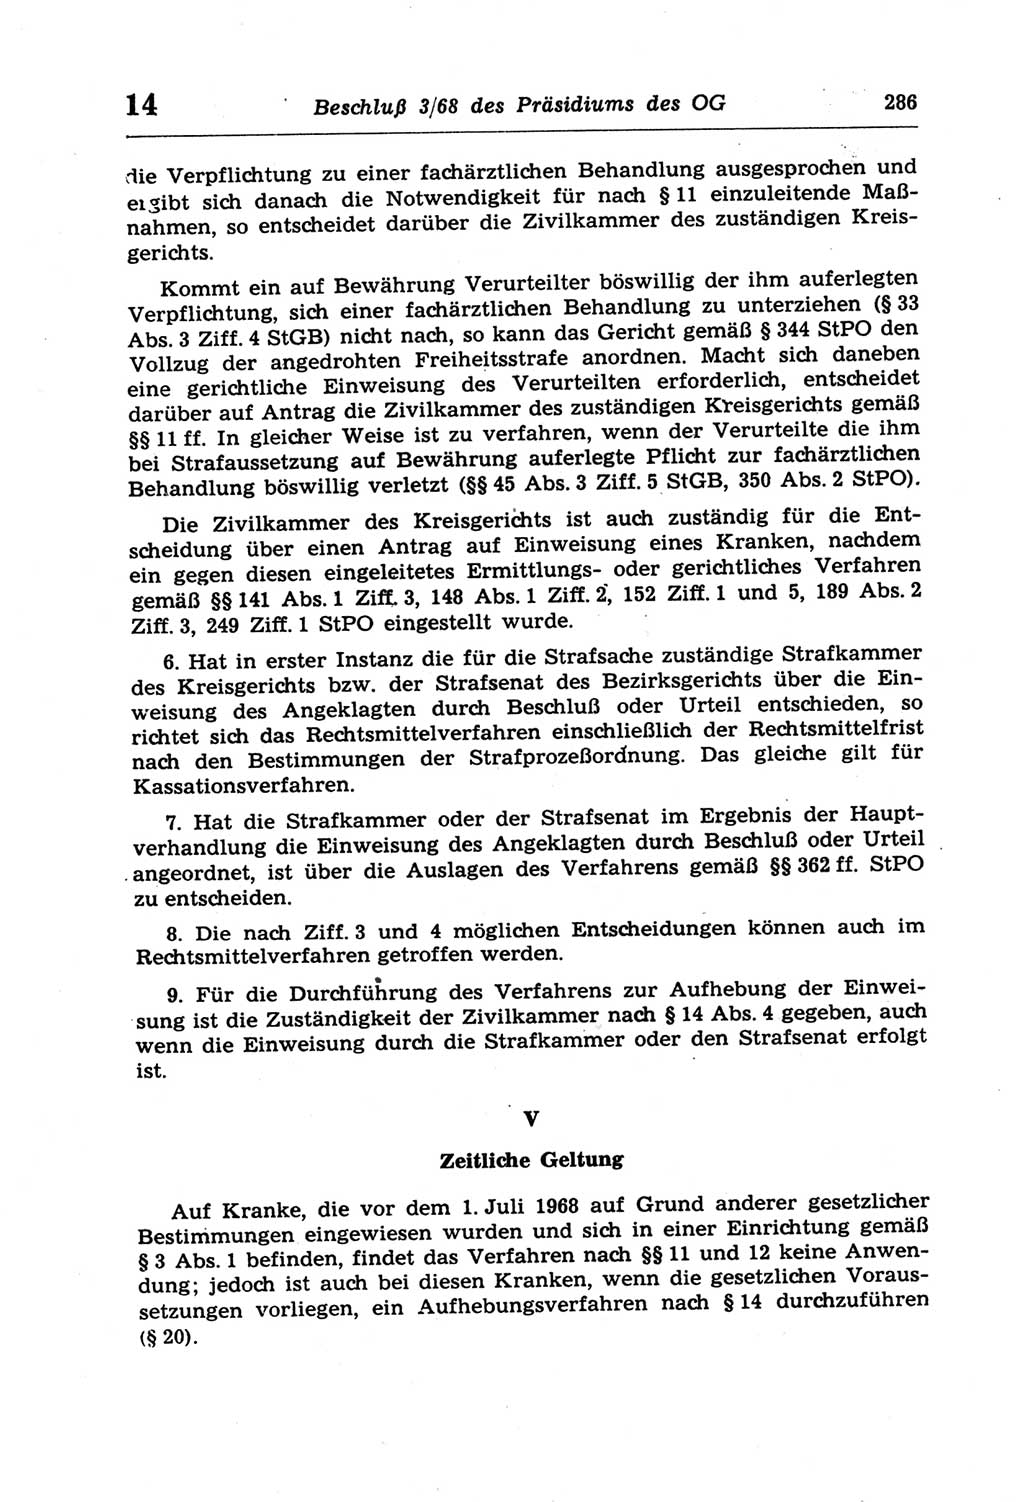 Strafprozeßordnung (StPO) der Deutschen Demokratischen Republik (DDR) und angrenzende Gesetze und Bestimmungen 1968, Seite 286 (StPO Ges. Bstgn. DDR 1968, S. 286)